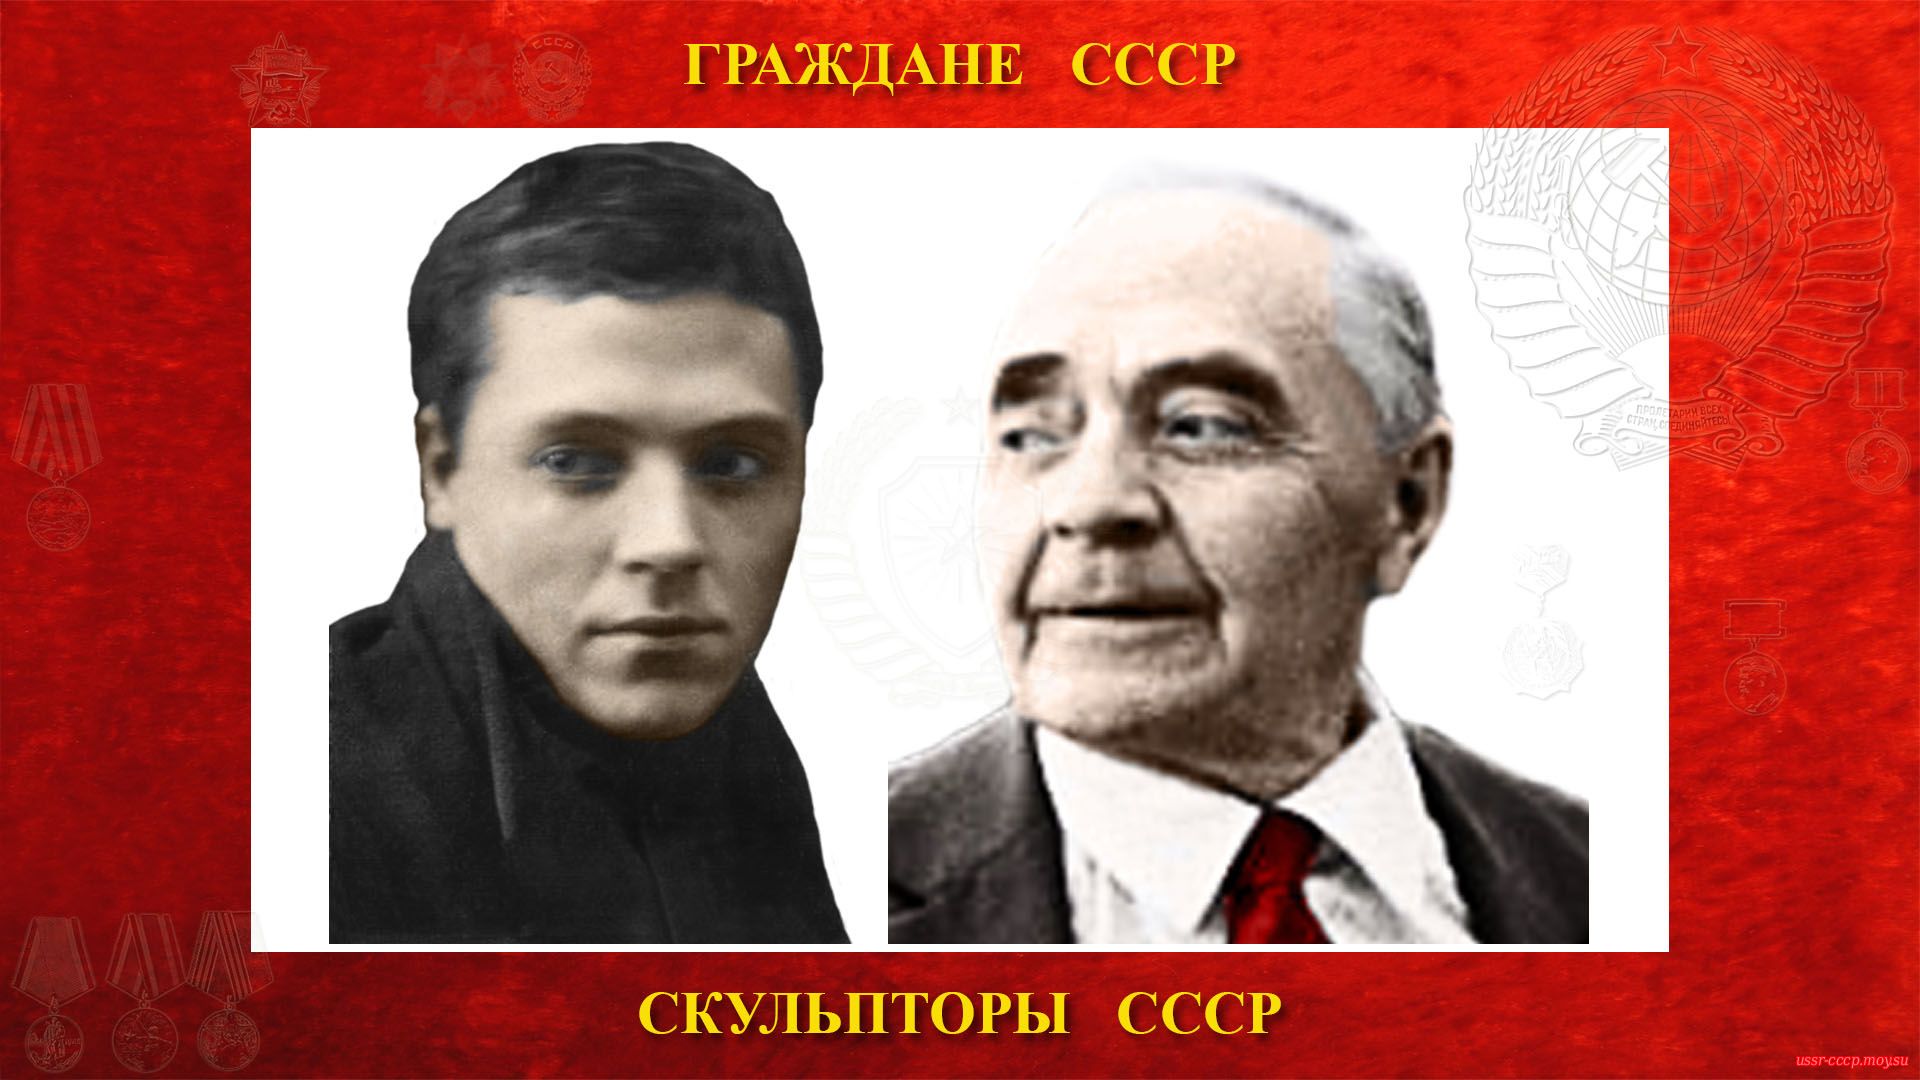 Бембель Андрей Онуфриевич — Советский скульптор — Профессор (30.10.1905 — 13.10.1986) (биография)